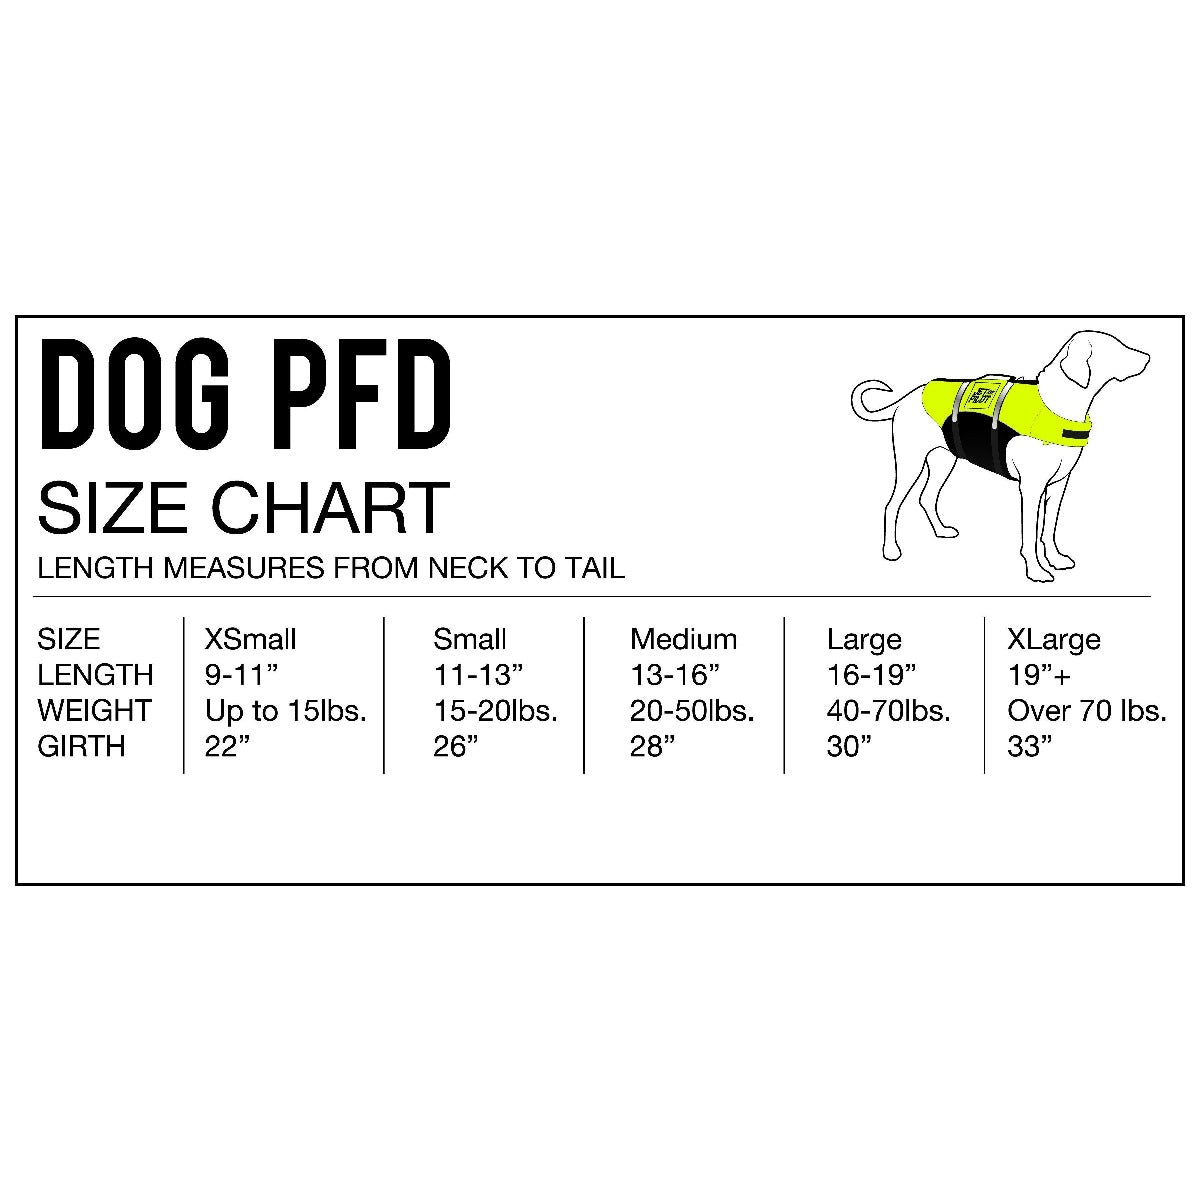 Size chart of dog PFD